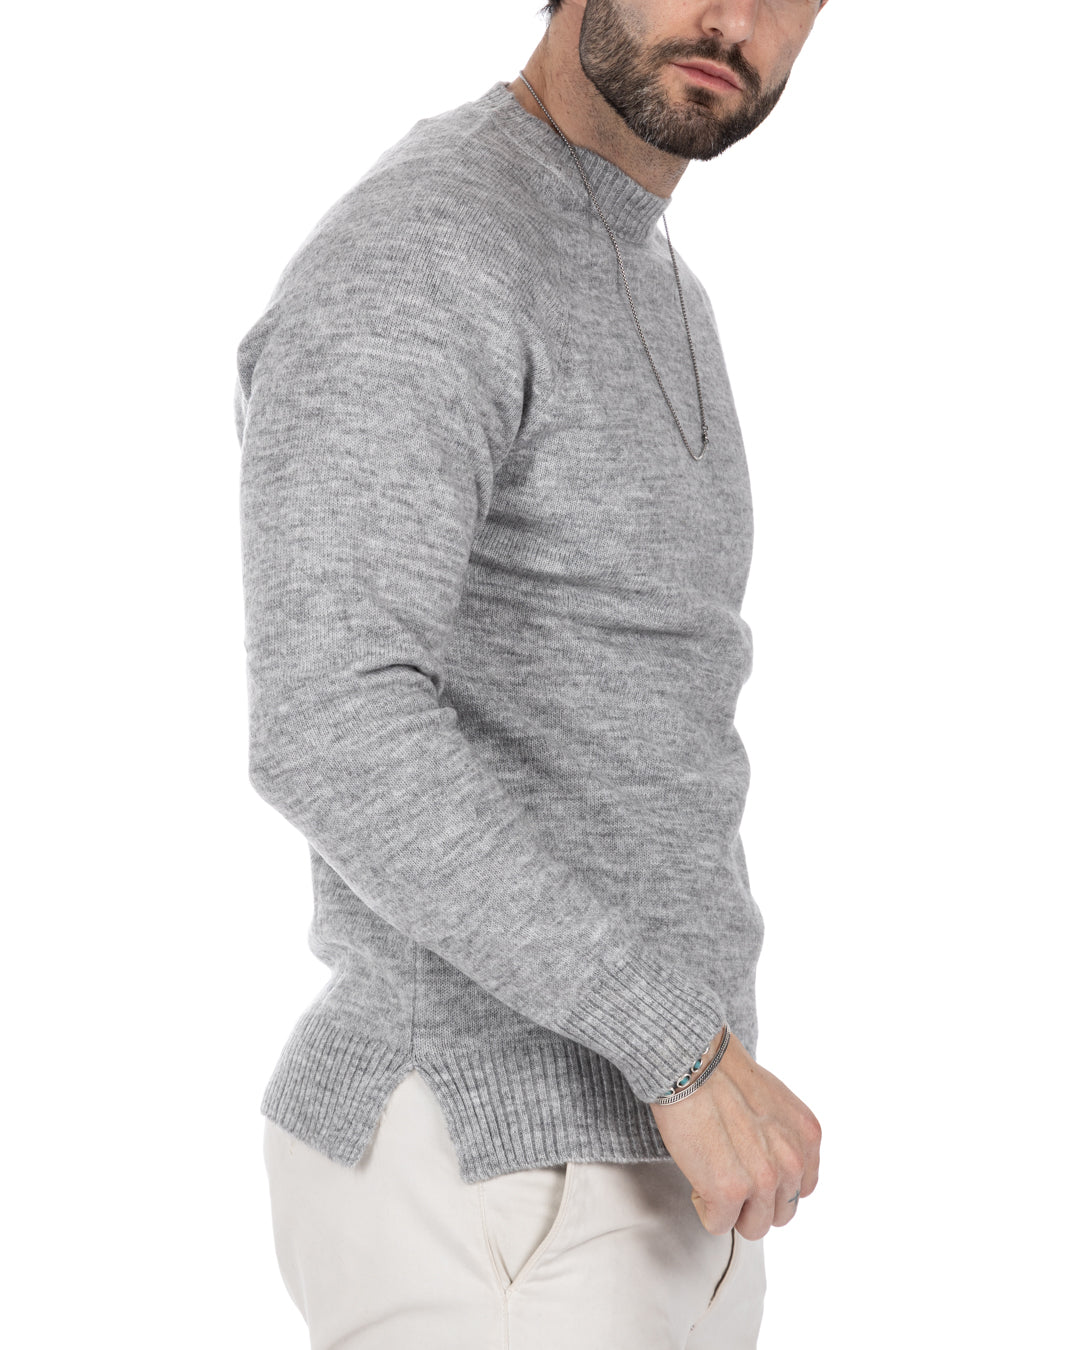 Nimega - maglione rasato grigio